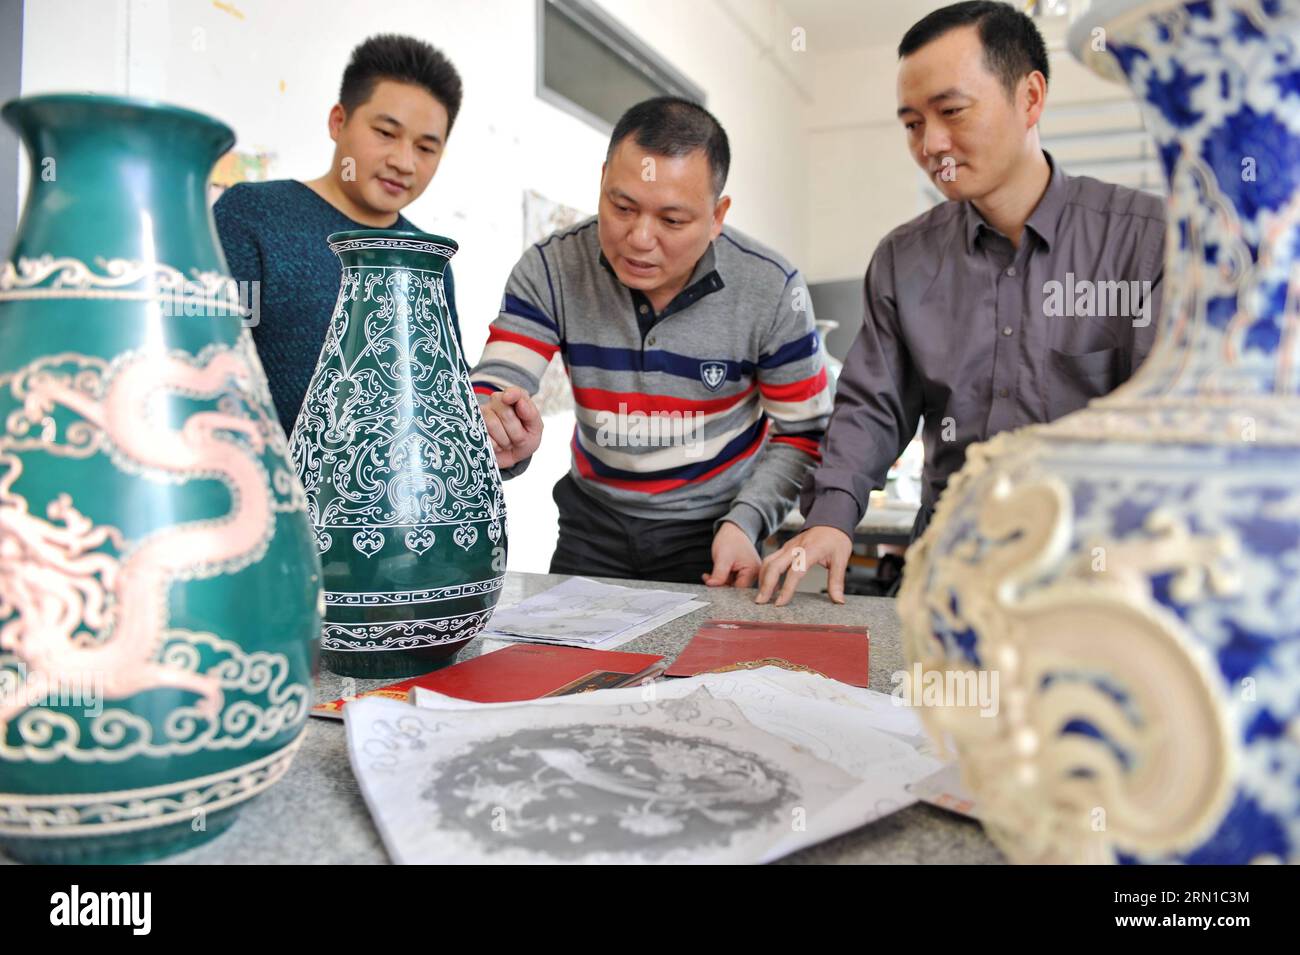 Die Lackfaden-Bildhauer Zhang Jiansheng (C) und Wang Guozhi (R) diskutieren am 16. Dezember 2014 in einem Studio in Xiamen, südöstlich der Provinz Fujian. Lackfäden-Modellierung ist eine Kunst im Südosten Chinas, die gut temperierte Lackfäden verwendet, um dekorative Muster zu erstellen. Die Mitte des 17. Jahrhunderts entstandene Lackgarnskulptur ist als eines der nationalen immateriellen Erben Chinas aufgeführt. ) (lmm) CHINA-FUJIAN-XIAMEN-ART-LACK FADENBILDHAUEREI (CN) LinxShanchuan PUBLICATIONxNOTxINxCHN Lack FADEN Zhang Jiansheng C und Wang r diskutieren einige Arbeiten IN einem Studio Stockfoto